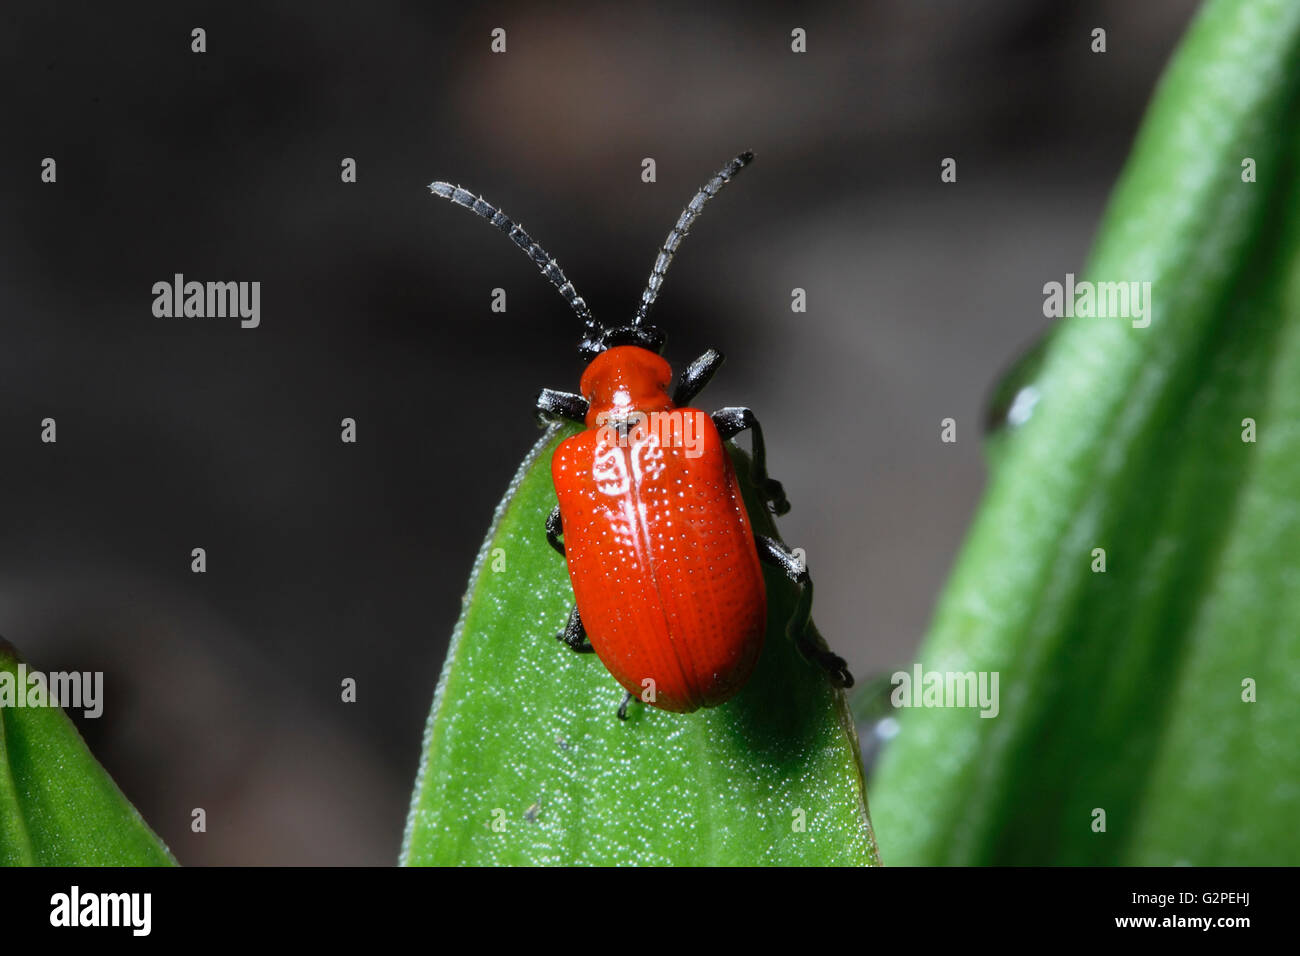 Les insectes, Beetle, Scarlet Lily Beetle Beetle, Lilloceris Lilii, insectes de couleur rouge sur le feuillage vert. Banque D'Images